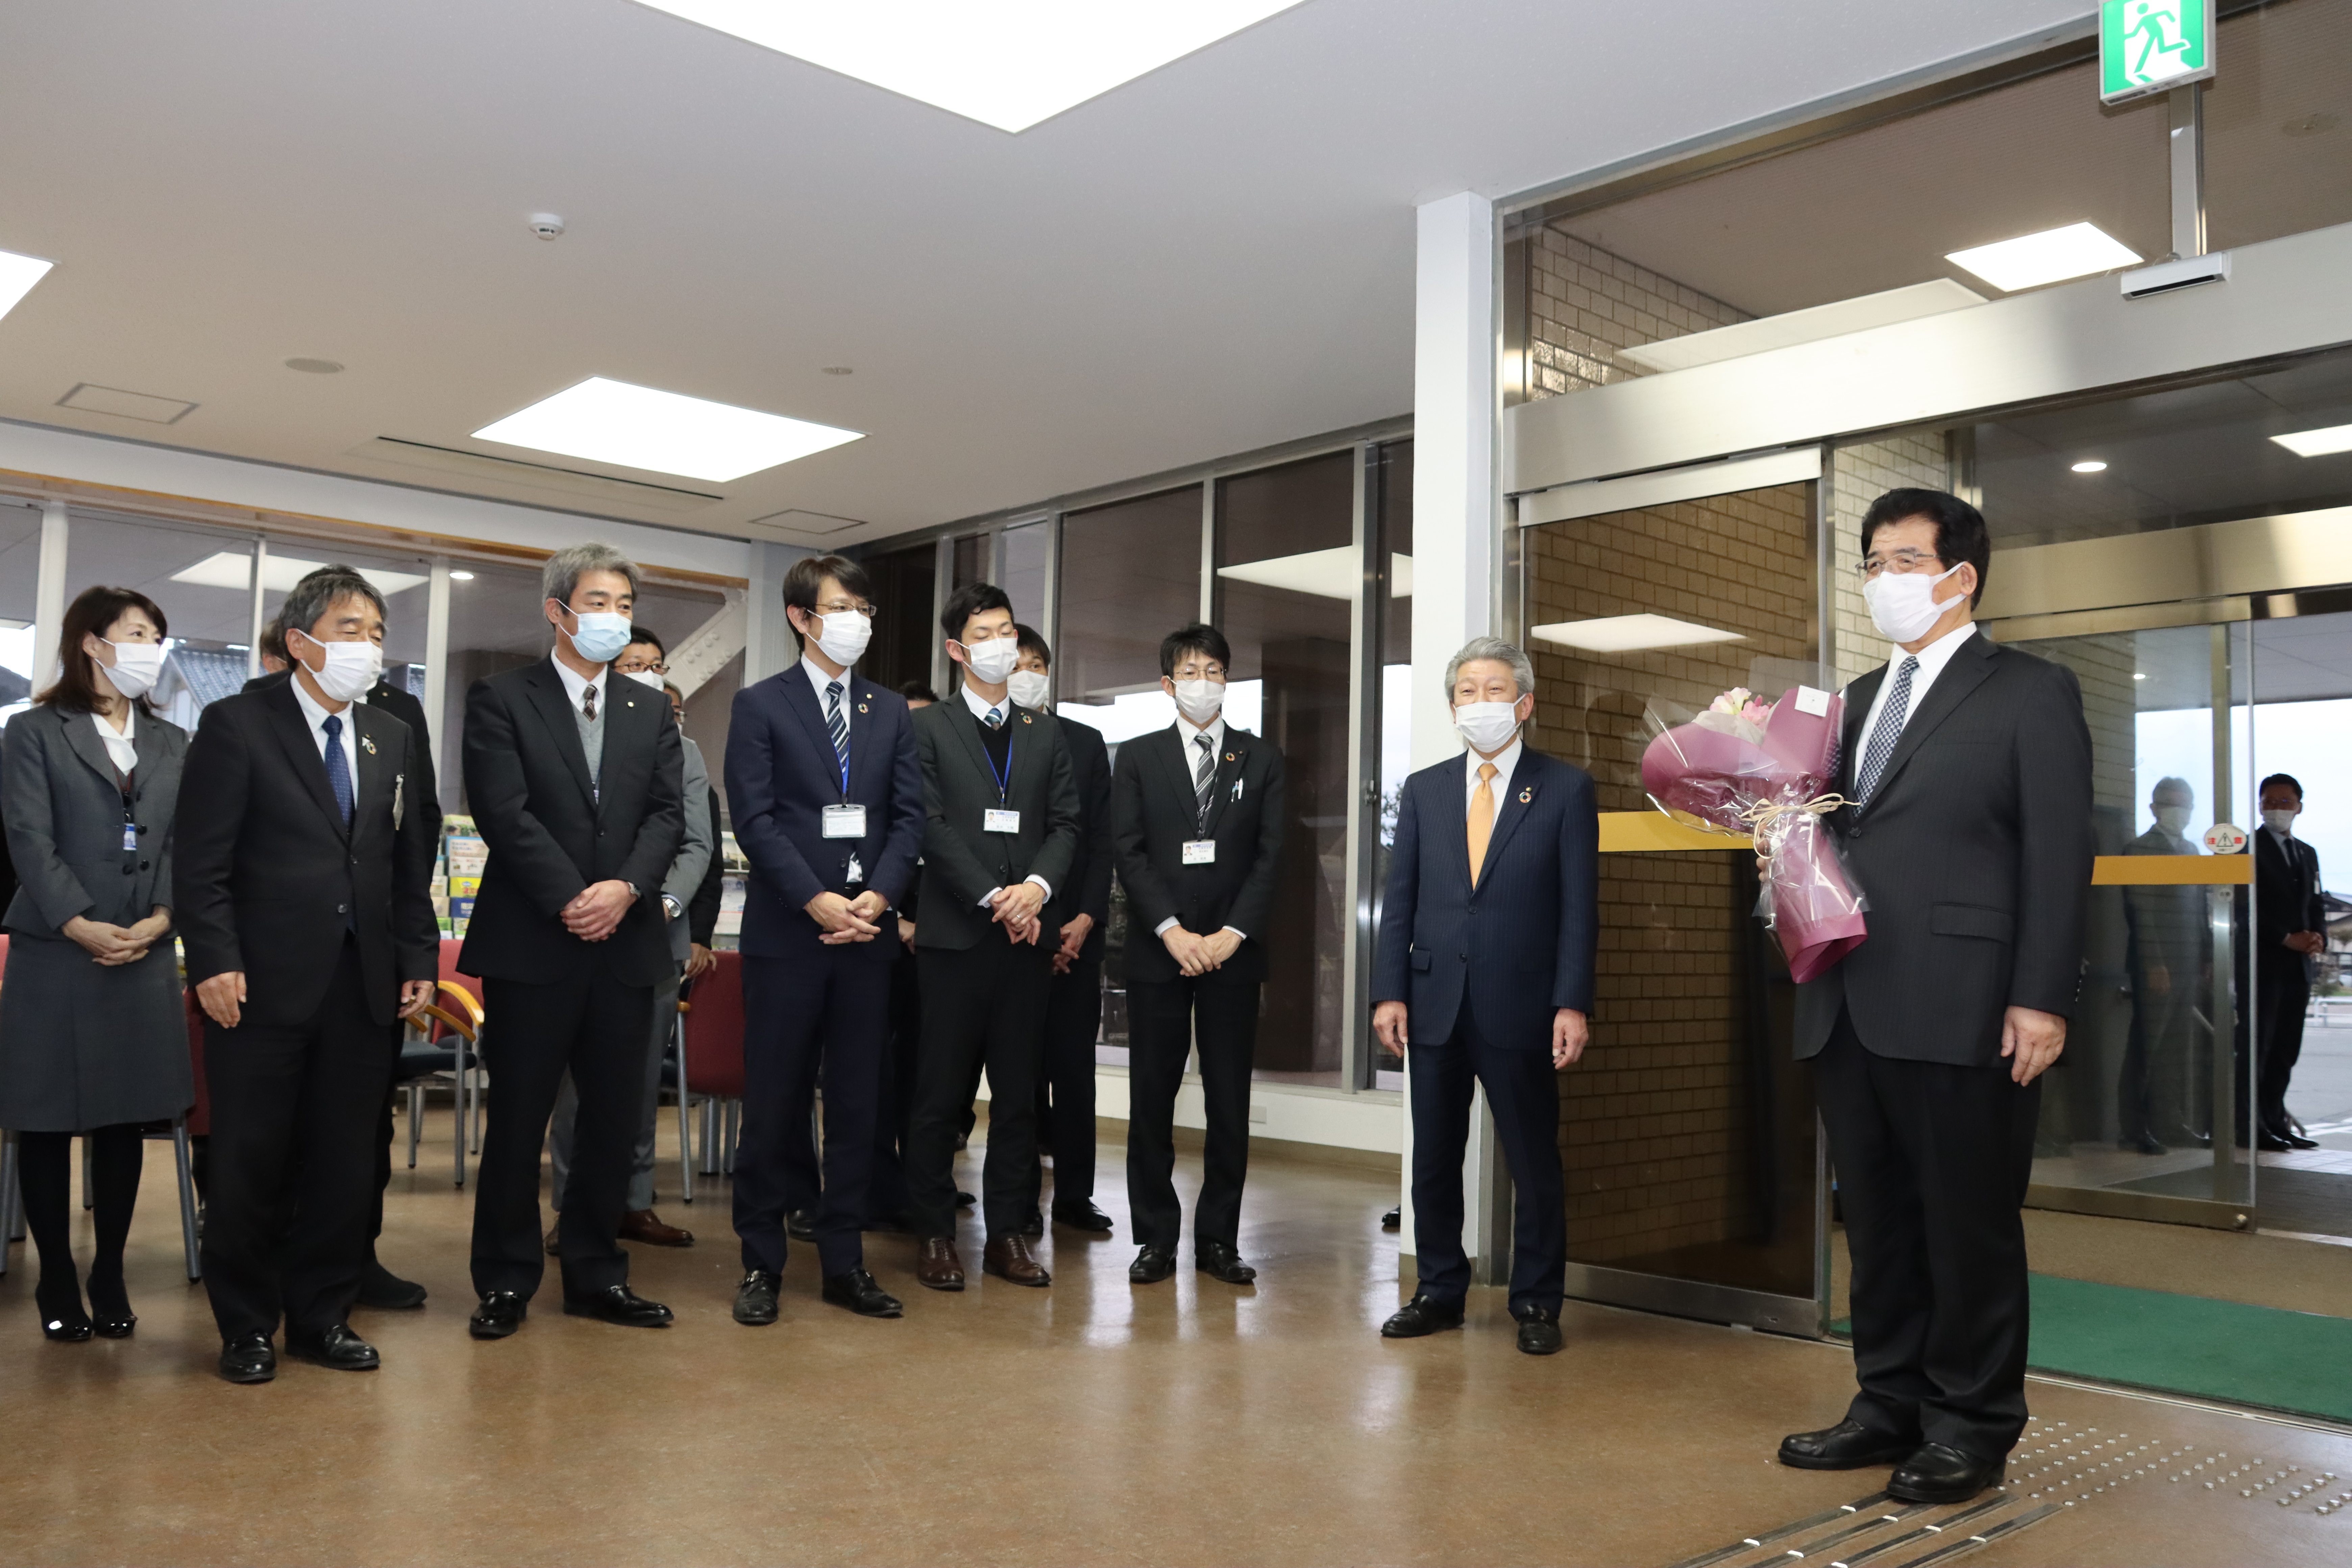 職員一同に見送られ退庁する橋本副市長の画像